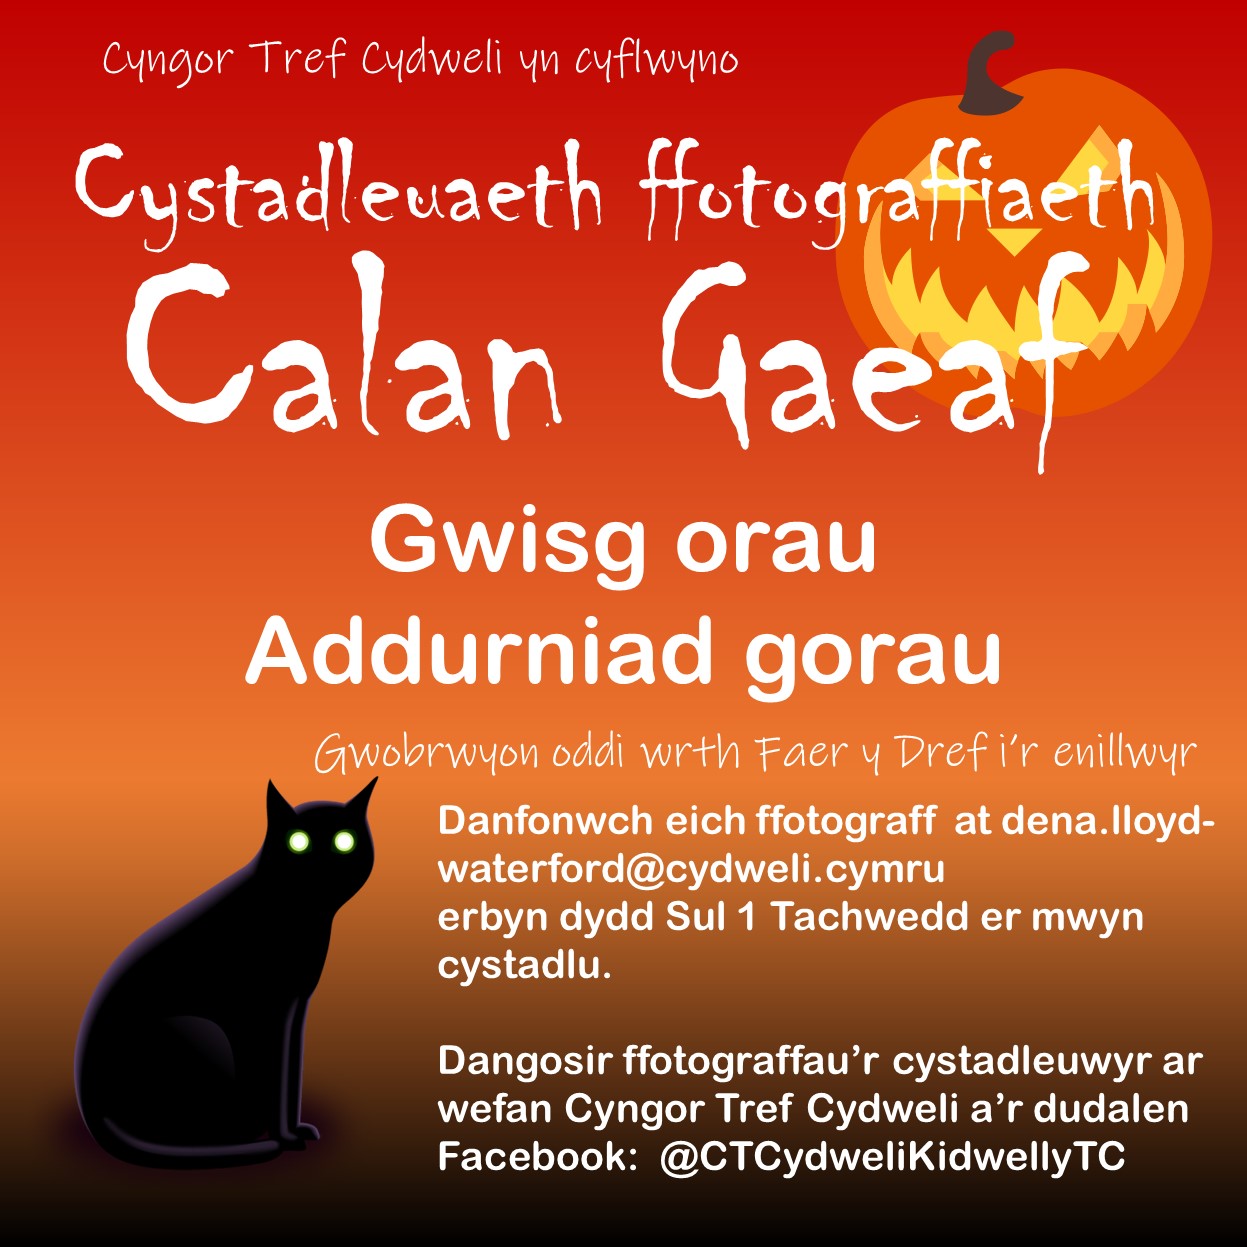 Cystadleuaeth Calan Gaeaf